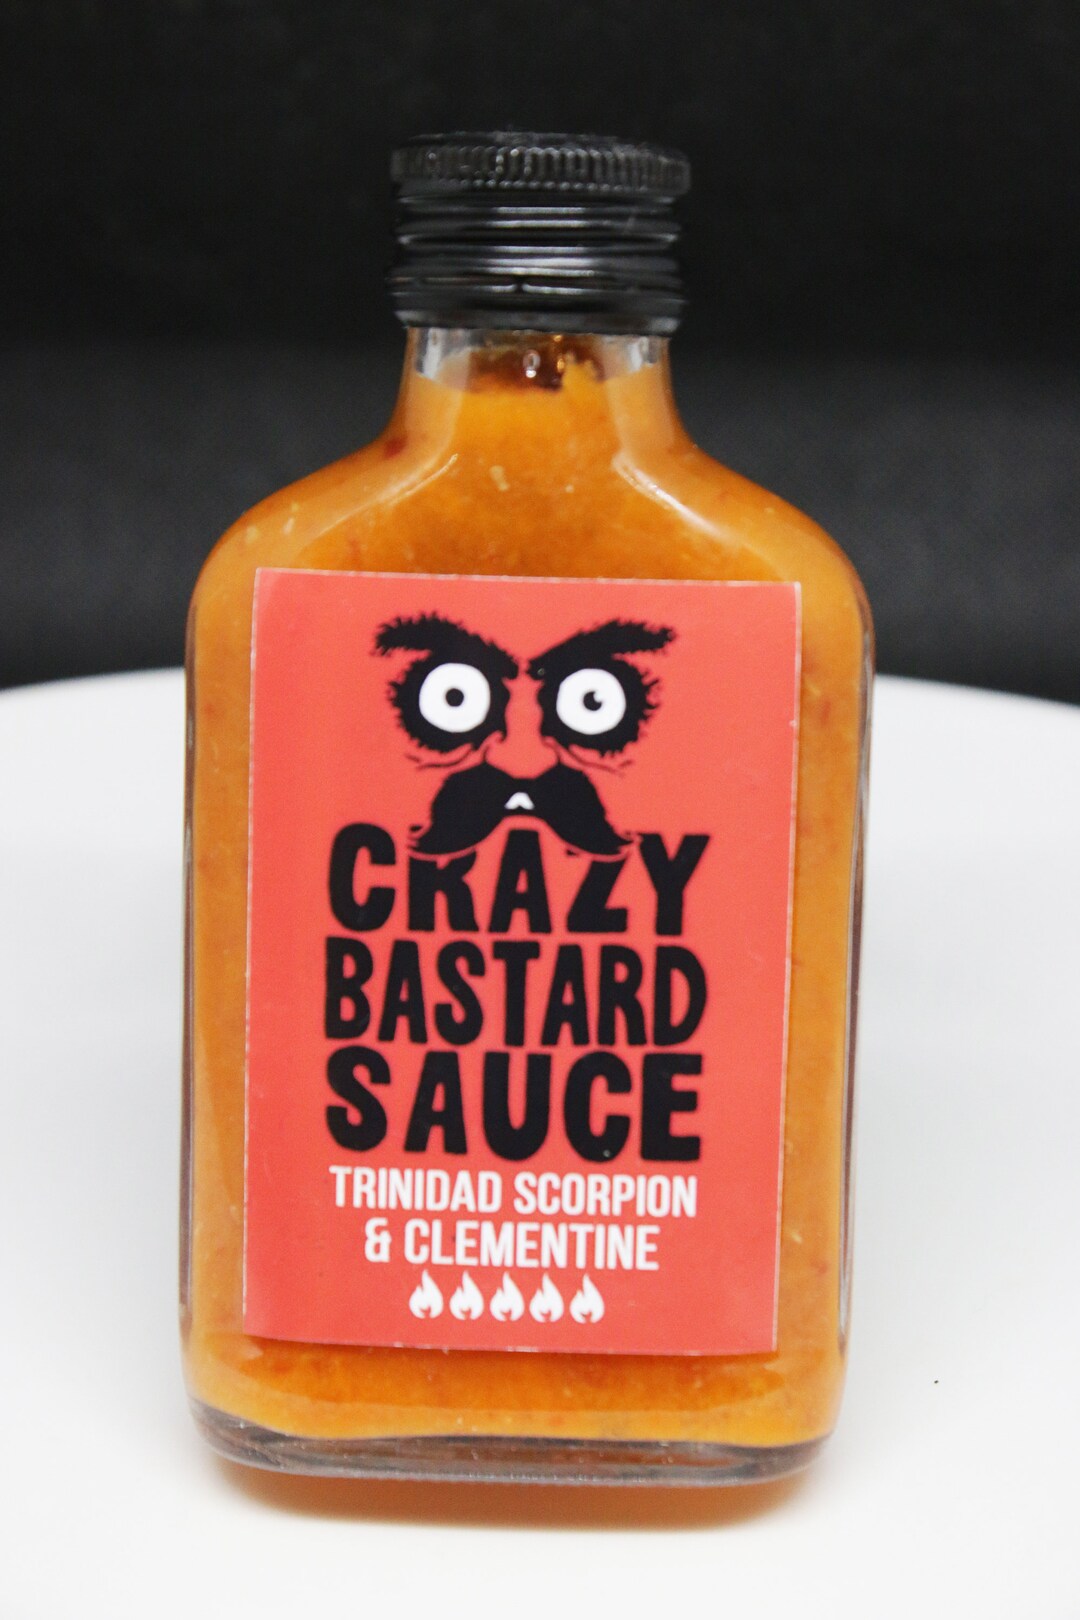 Crazy Bastard Trinidad Scorpion & Clementine Sauce - Acheter en ligne